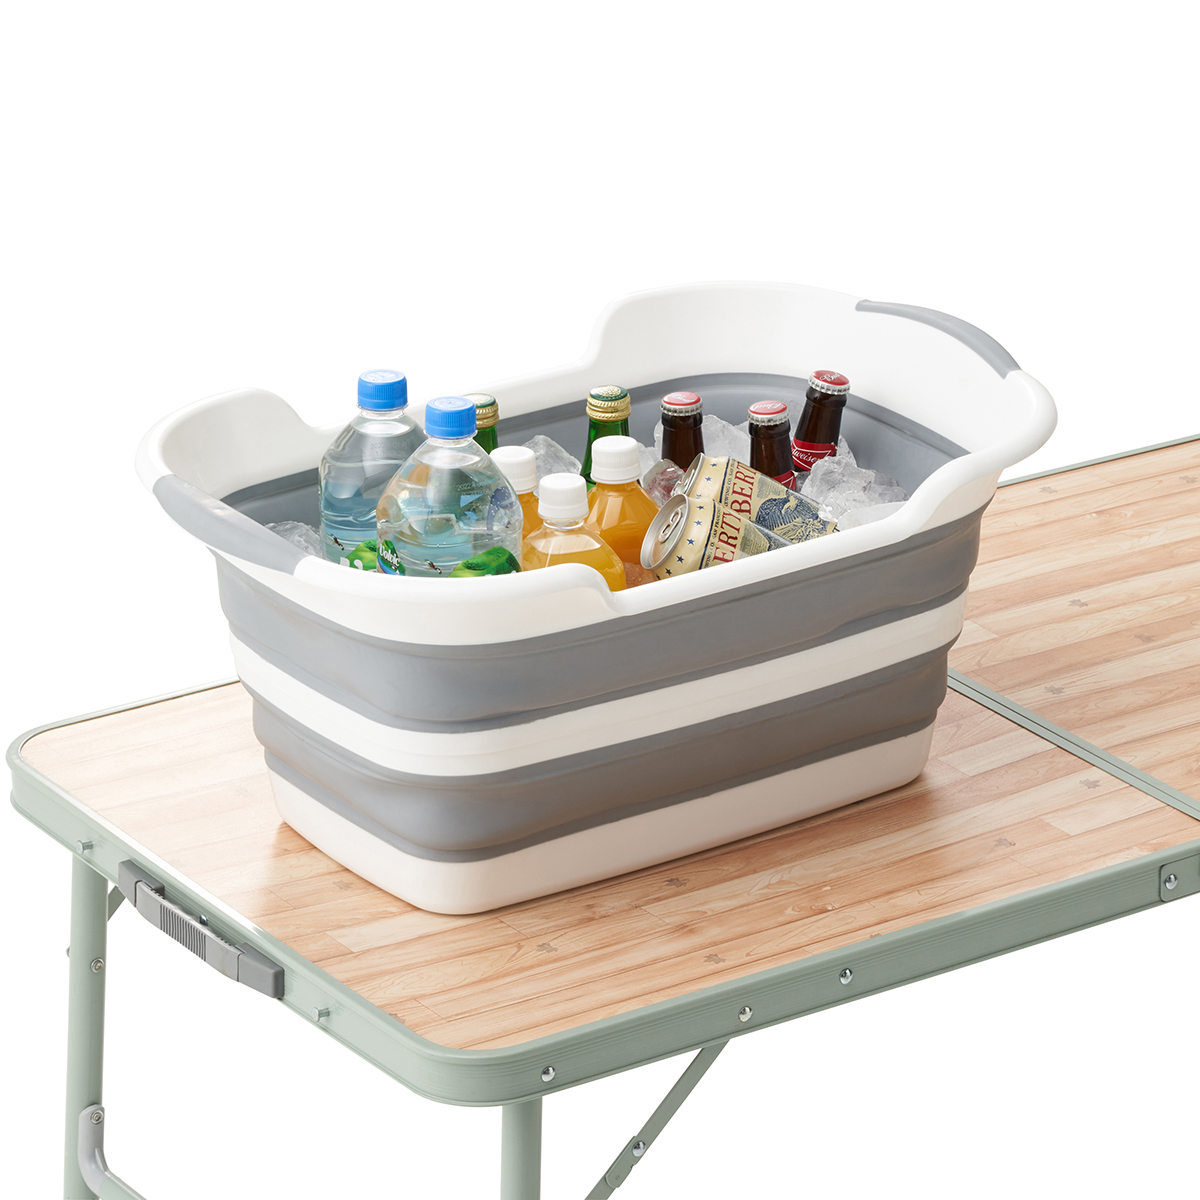 LOGOS たためる洗い桶|ギア|キッチンツール|小物|製品情報|ロゴス 